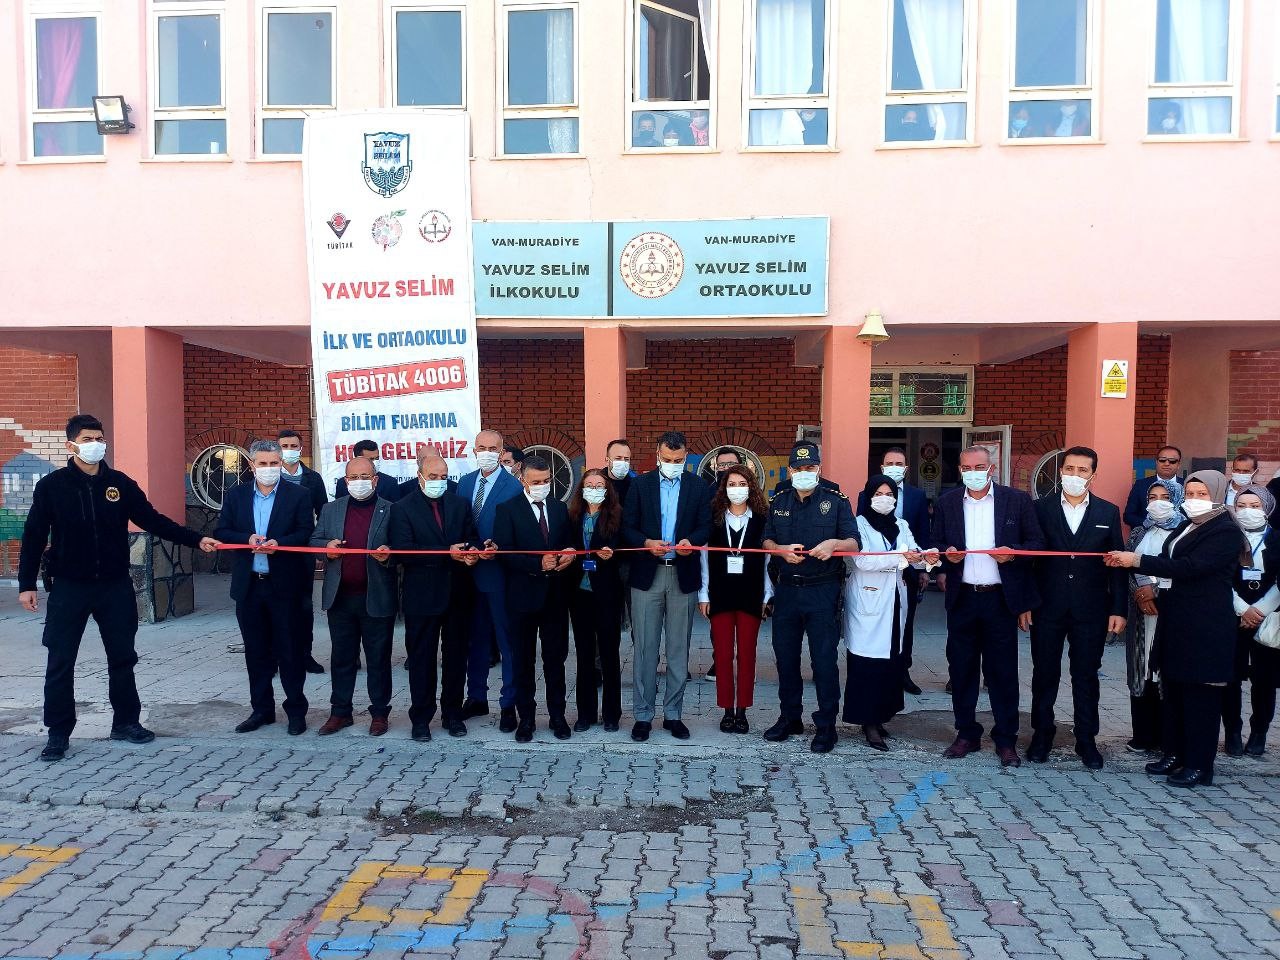 Muradiye’de ‘4006 TÜBİTAK Bilim Fuarı’ açıldı #van